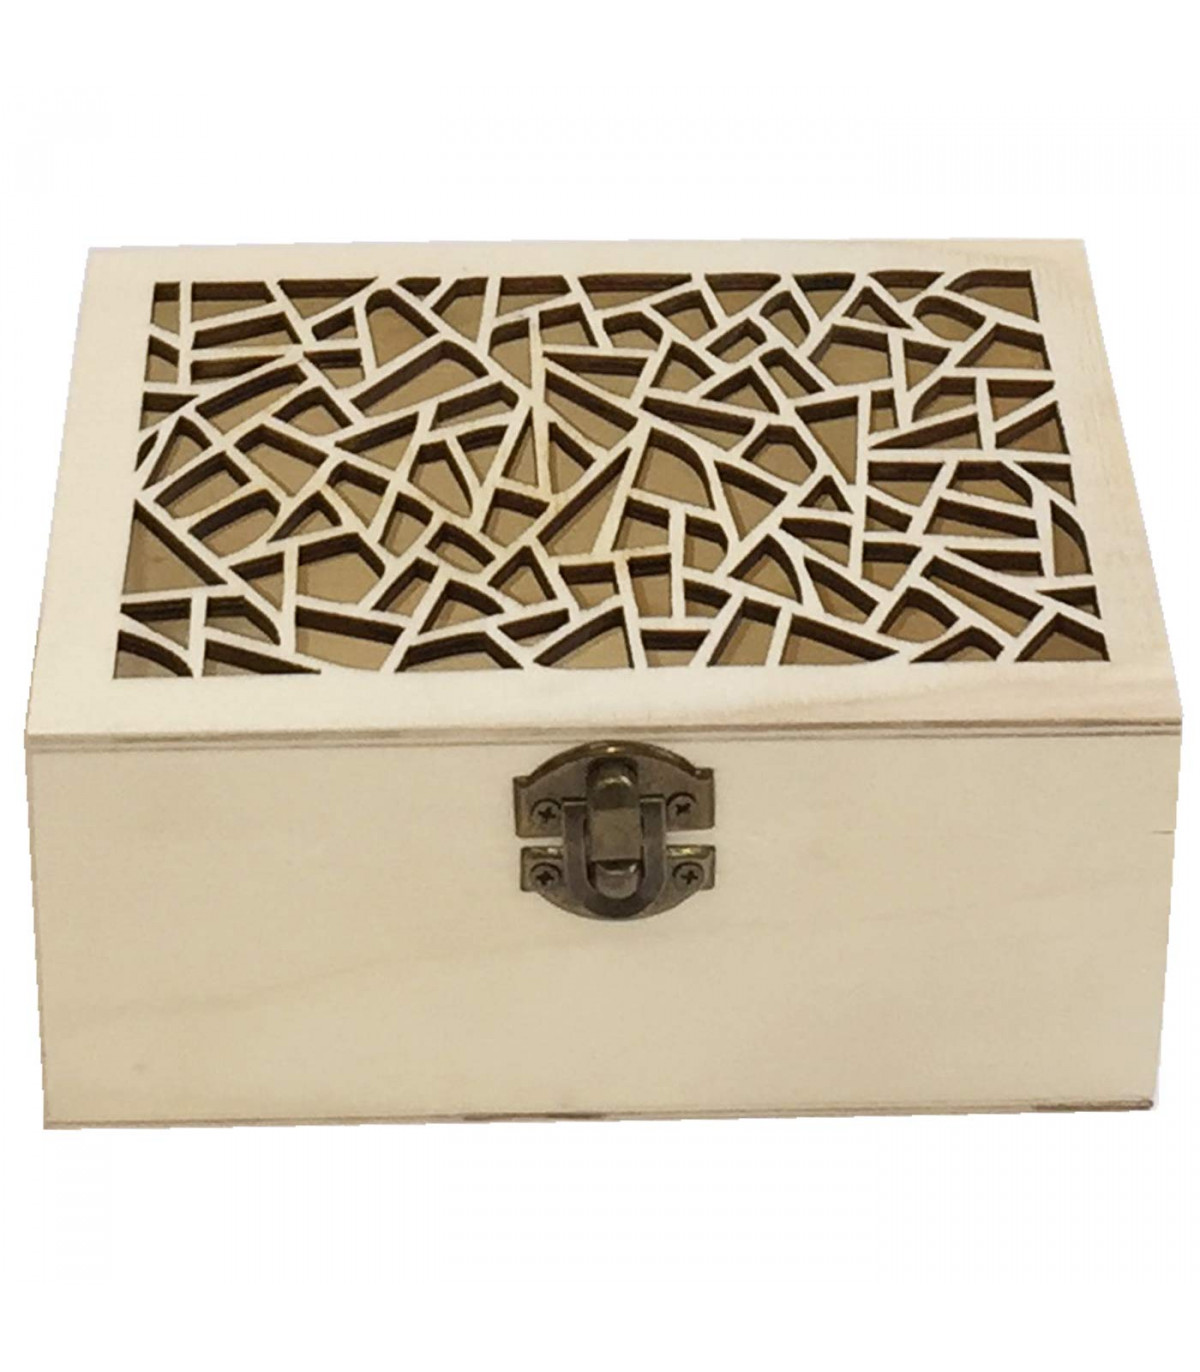 Caja con forma de baúl, madera natural, cierre metálico, tapa redondeada,  almacenaje joyas, manualidades, decoración